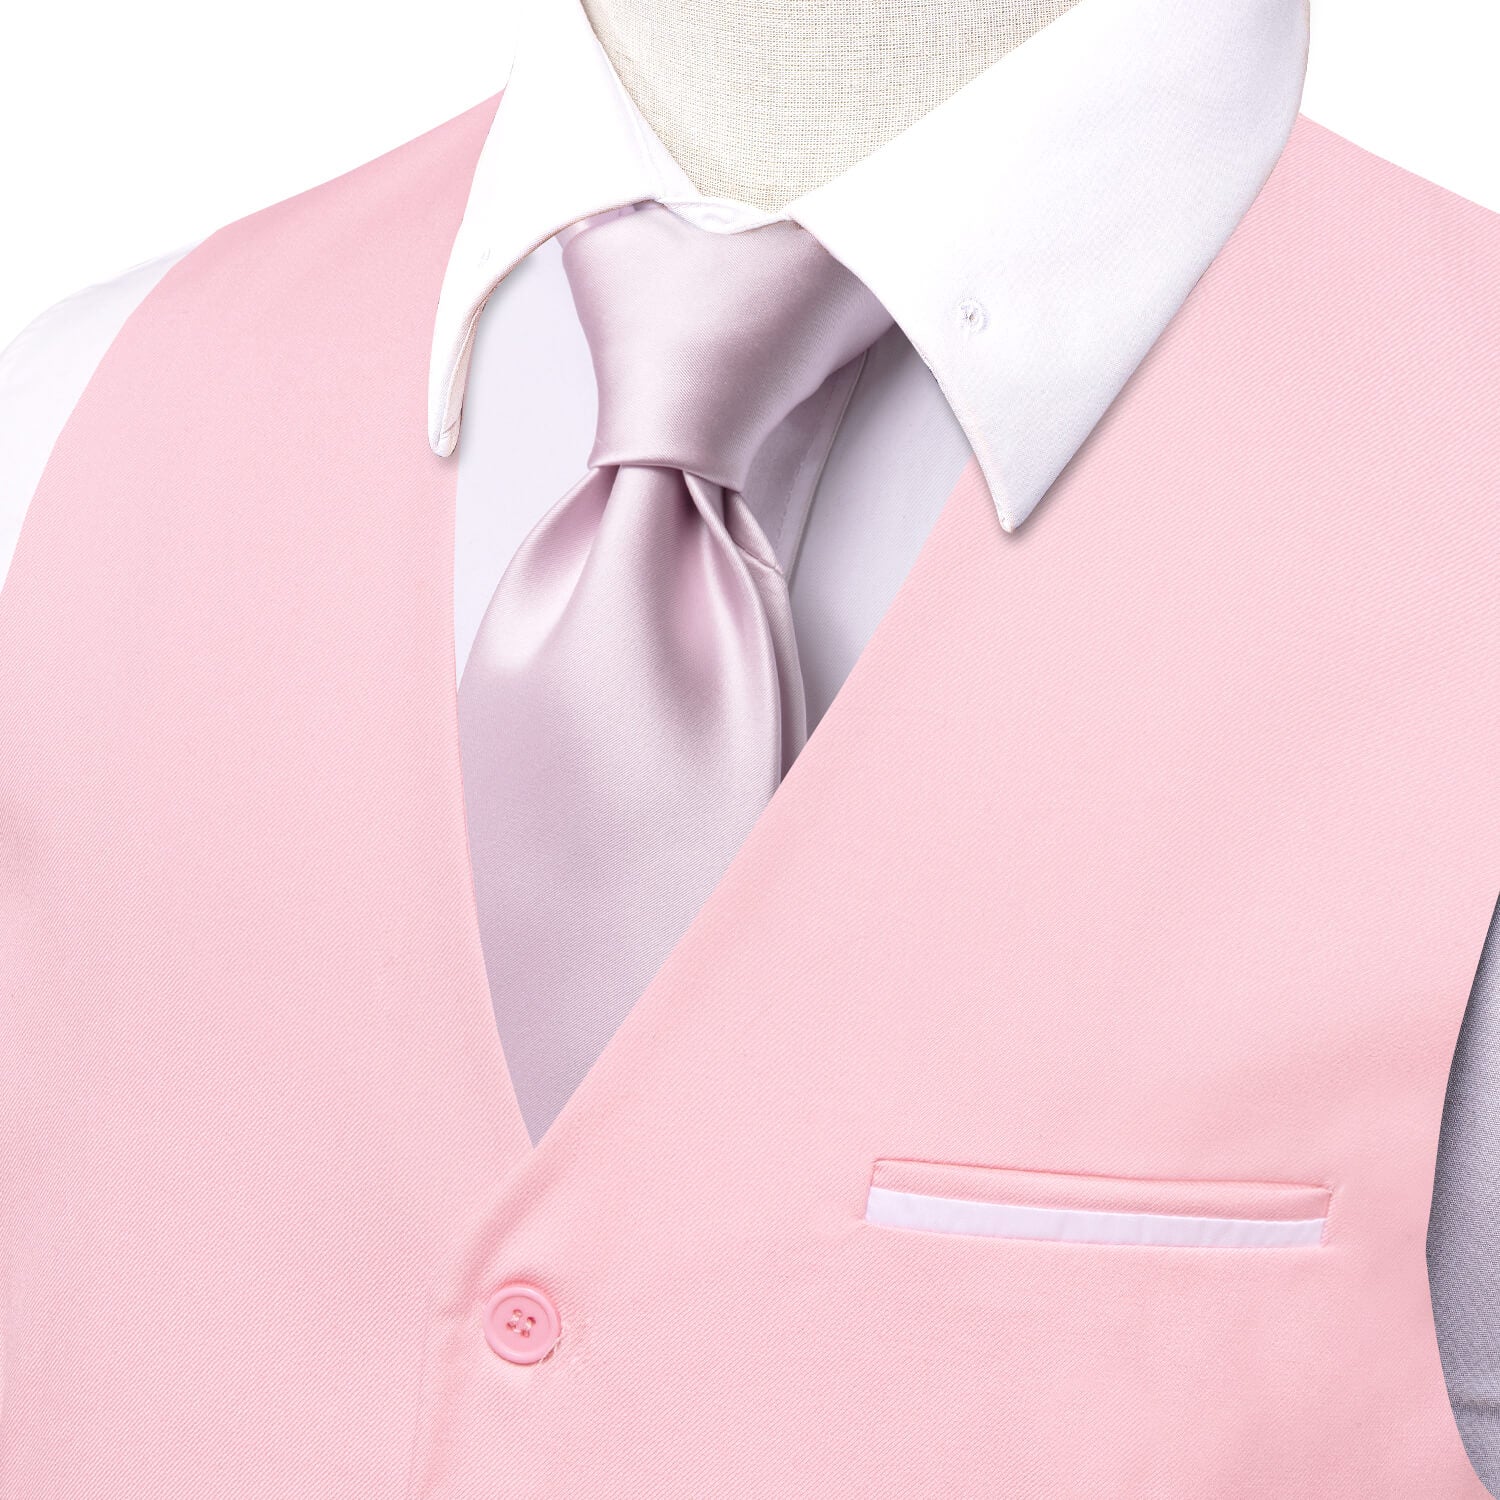 Hi-Tie Men's Vest Baby Pink Solid Silk Vest Business Suit